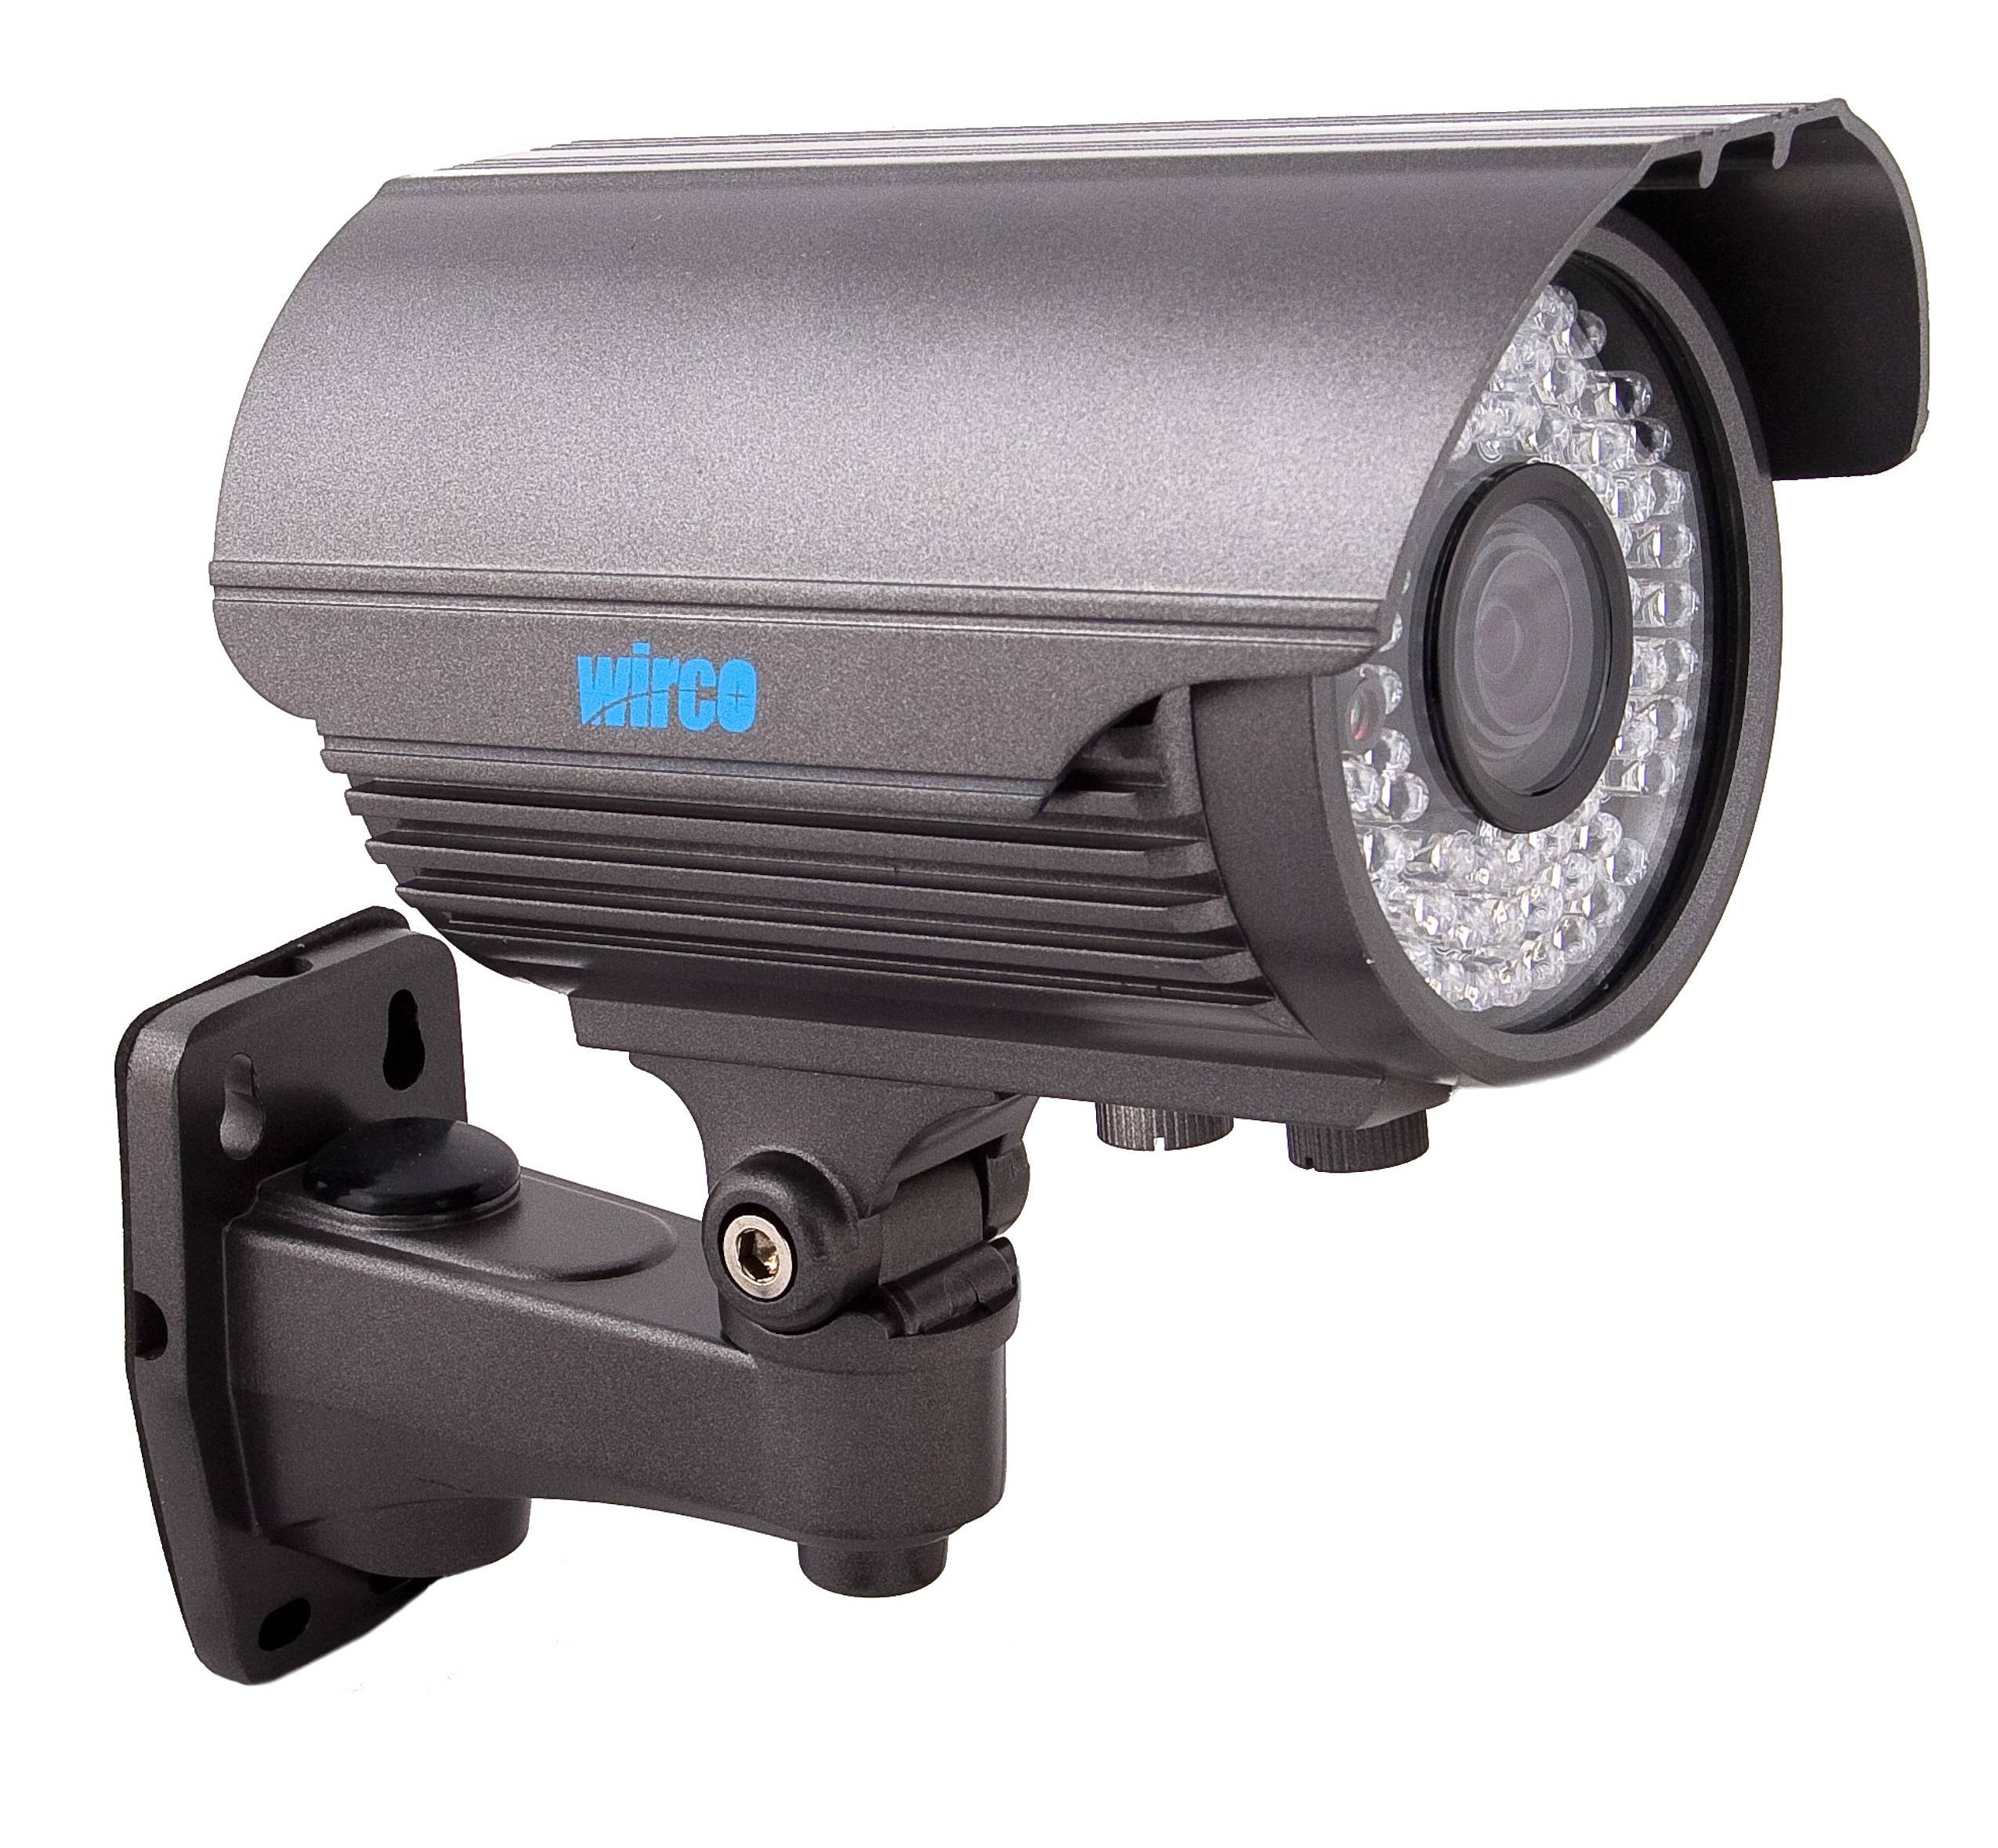 4 критерия выбора ик прожектора для видеонаблюдения, их виды и основные преимущества